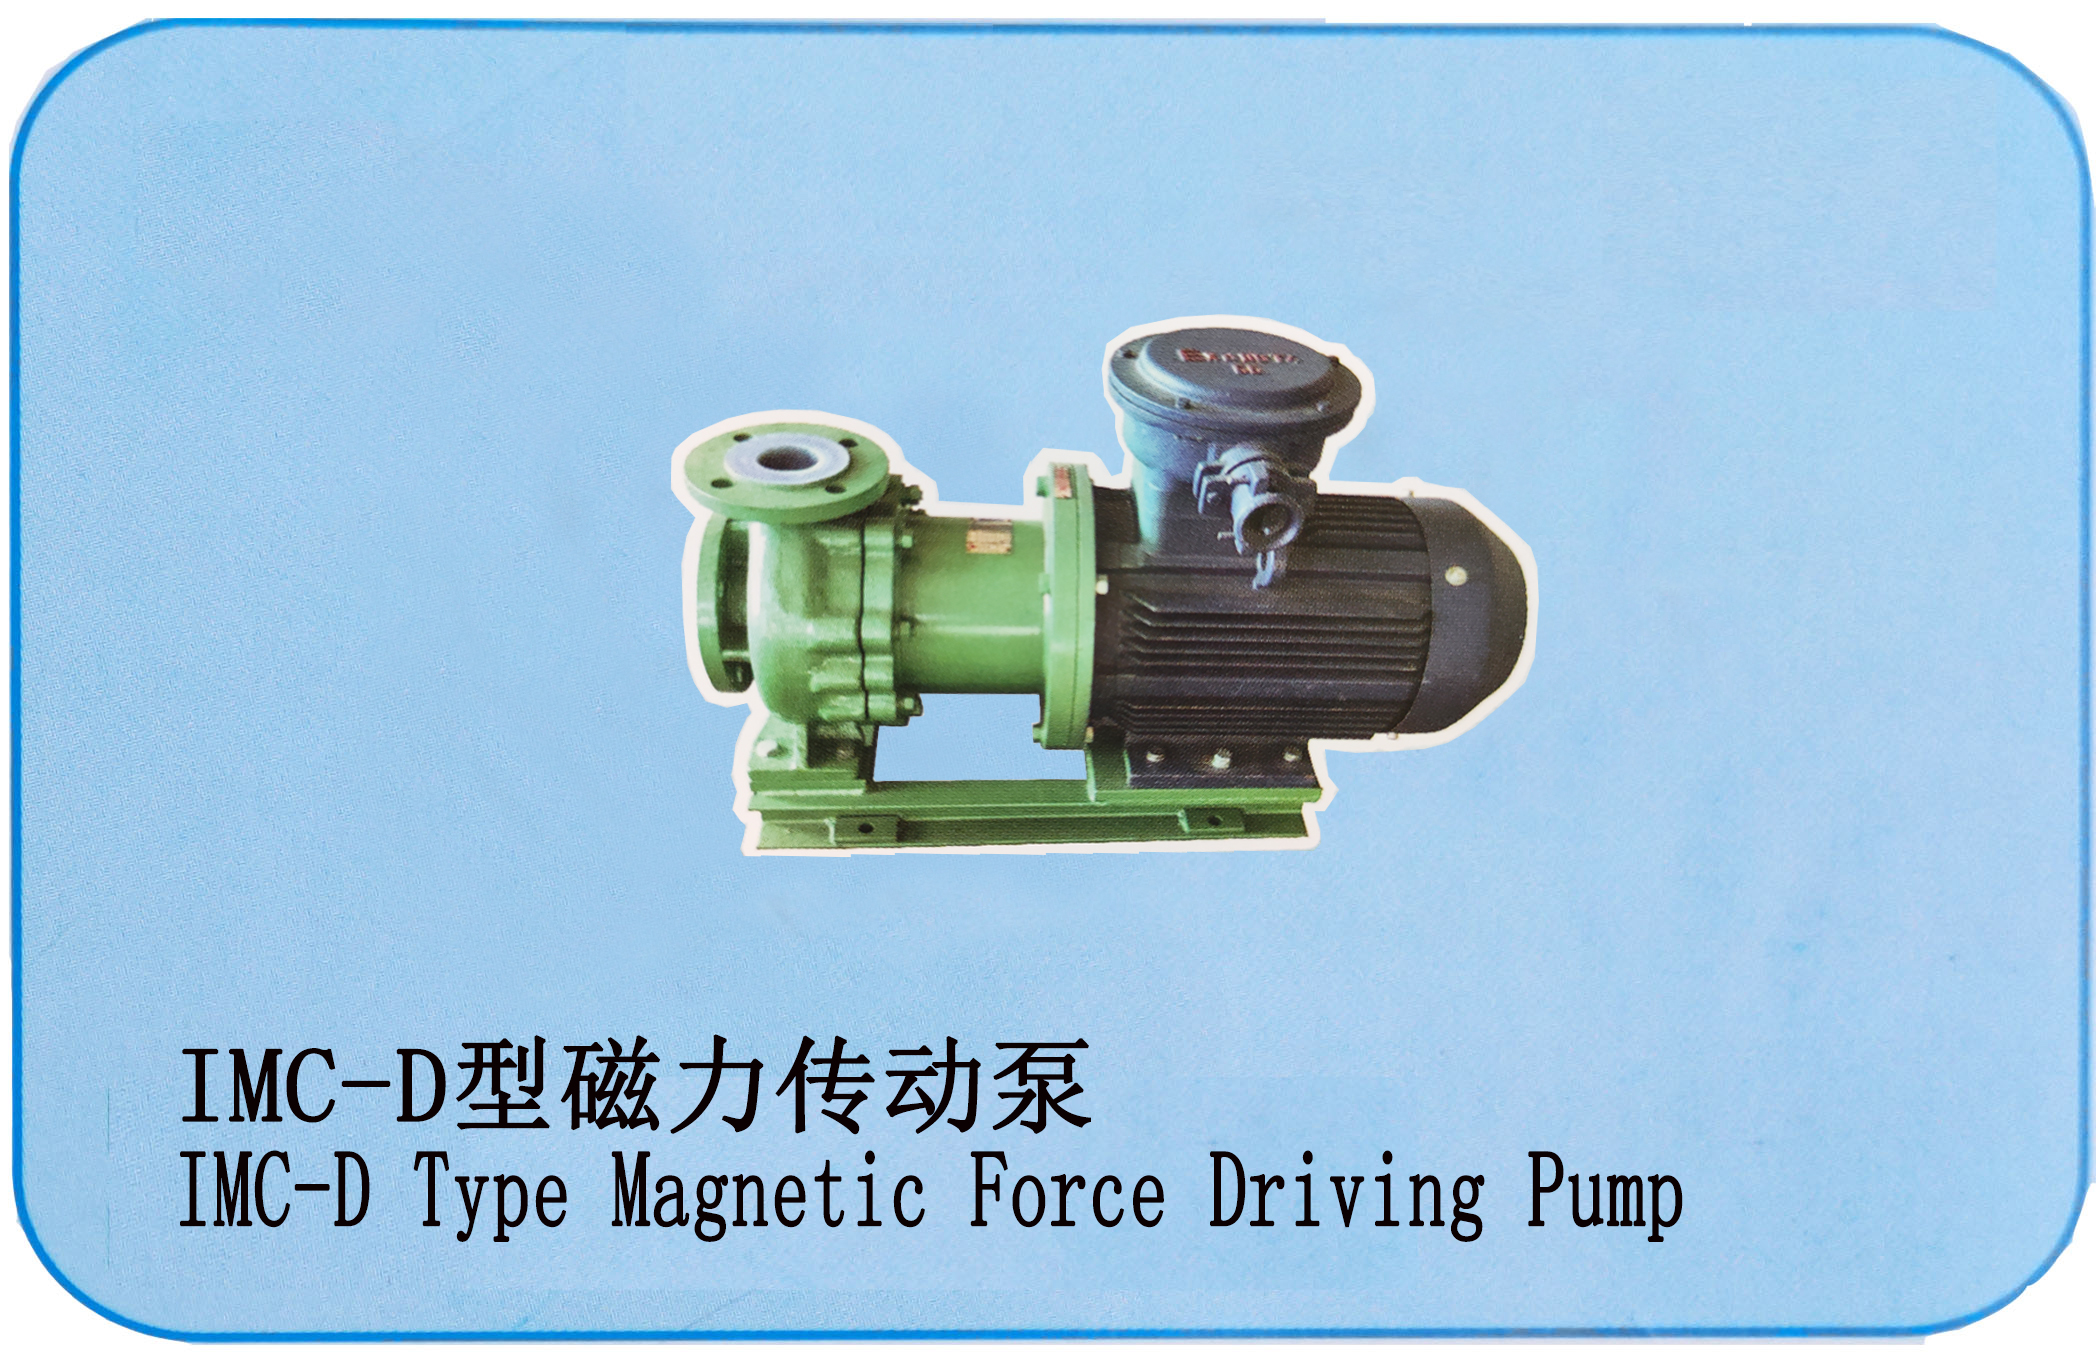 IMC-D型磁力传动泵